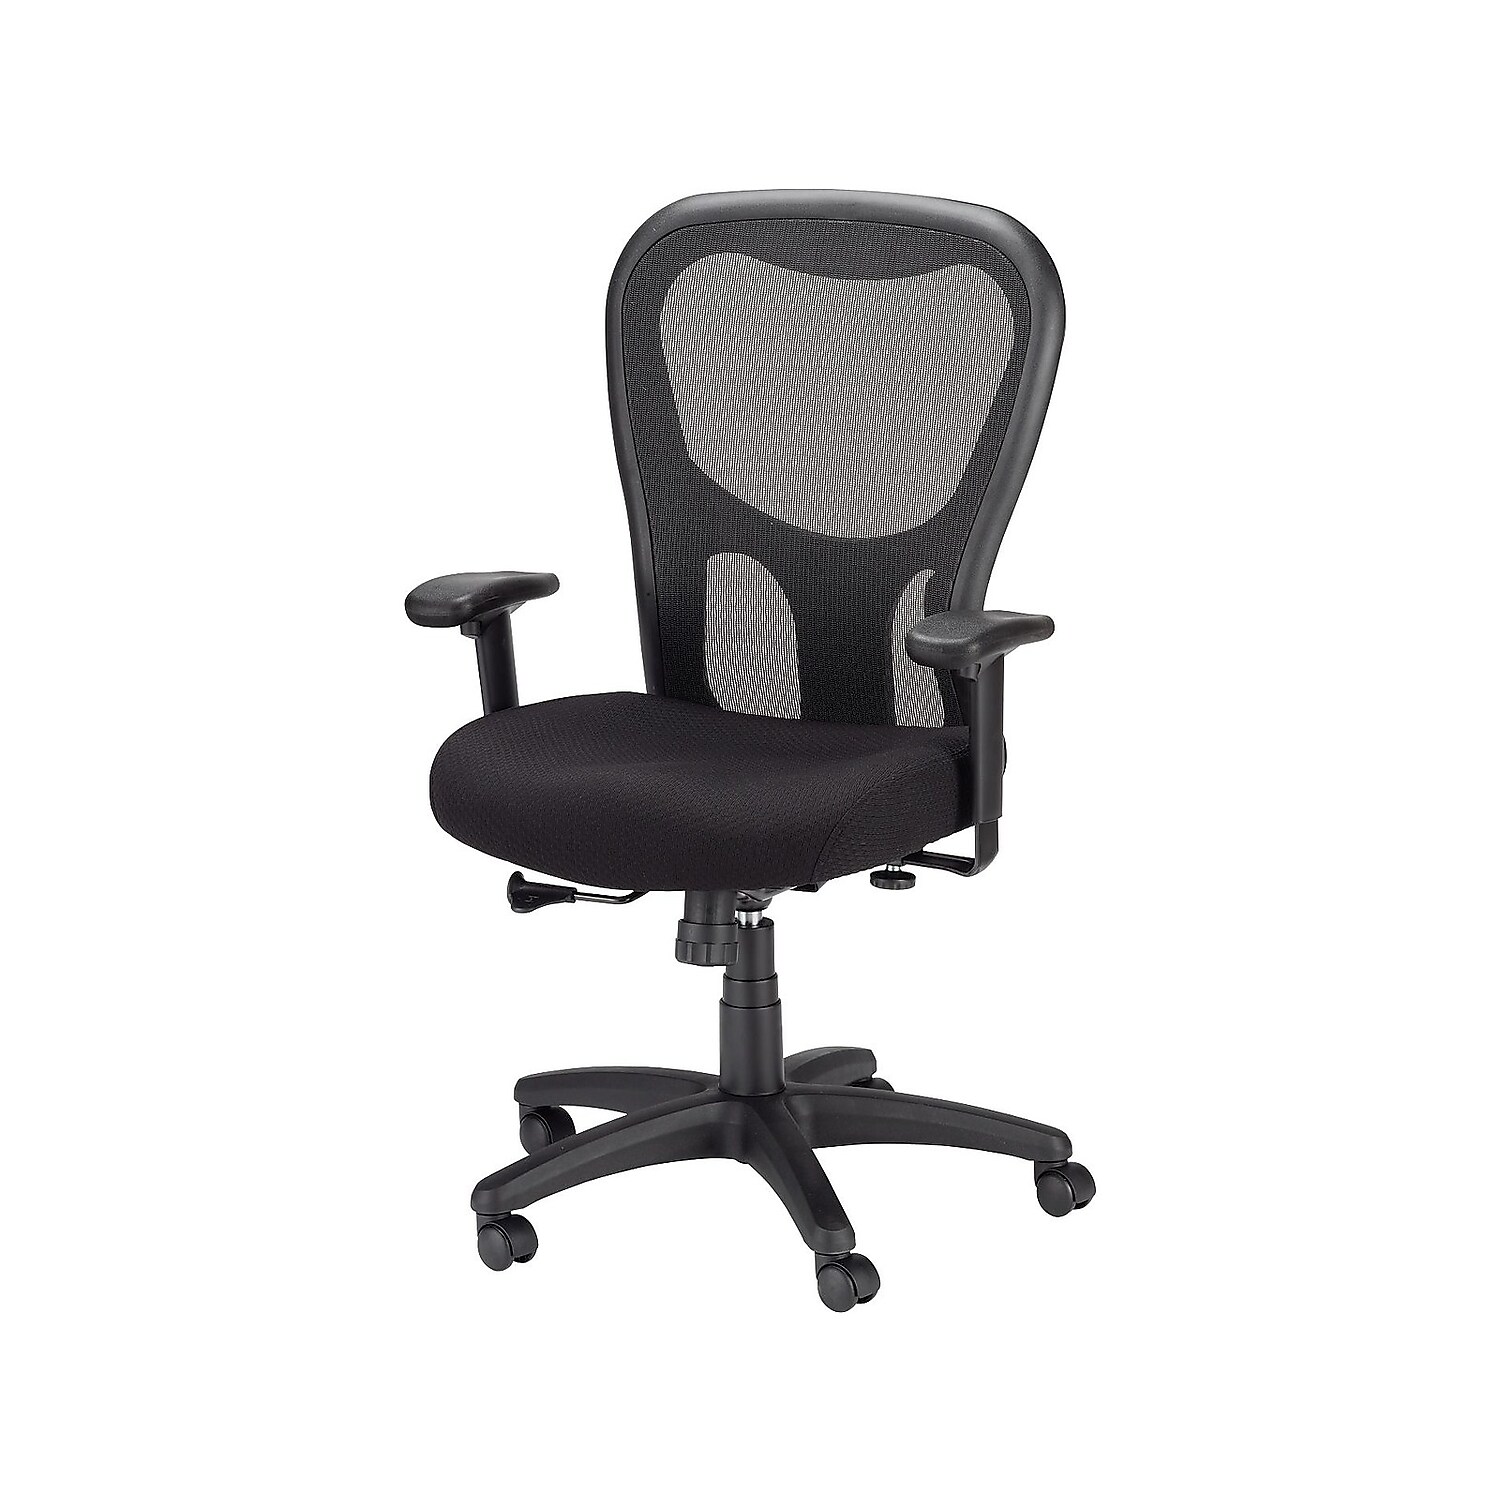 Tempur-Pedic TP9000 Mesh Task Chair Black (TP9000) 324021 - image 2 of 7